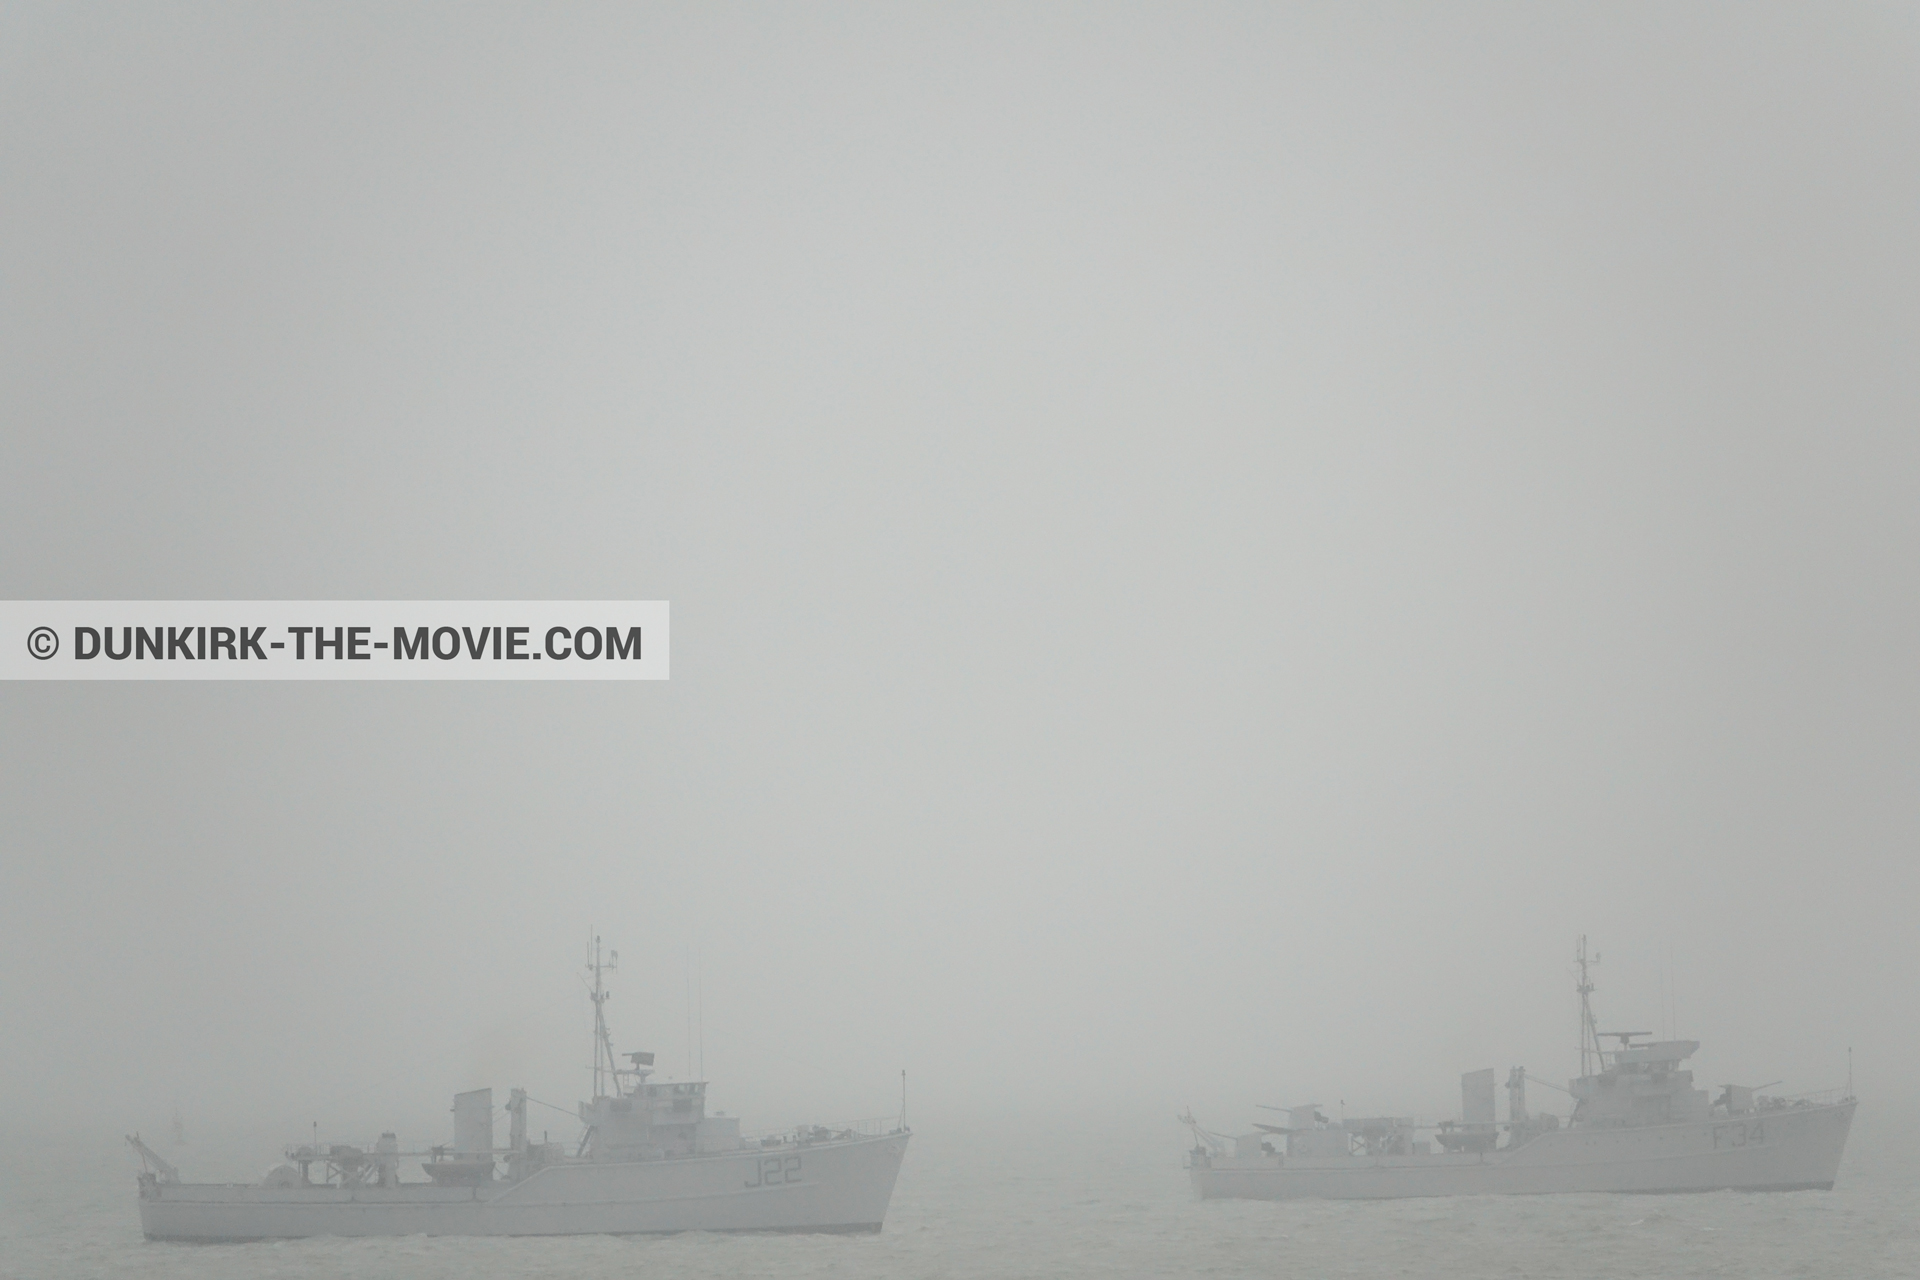 Photo avec ciel gris, F34 - Hr.Ms. Sittard, J22 -Hr.Ms. Naaldwijk, mer calme,  des dessous du Film Dunkerque de Nolan